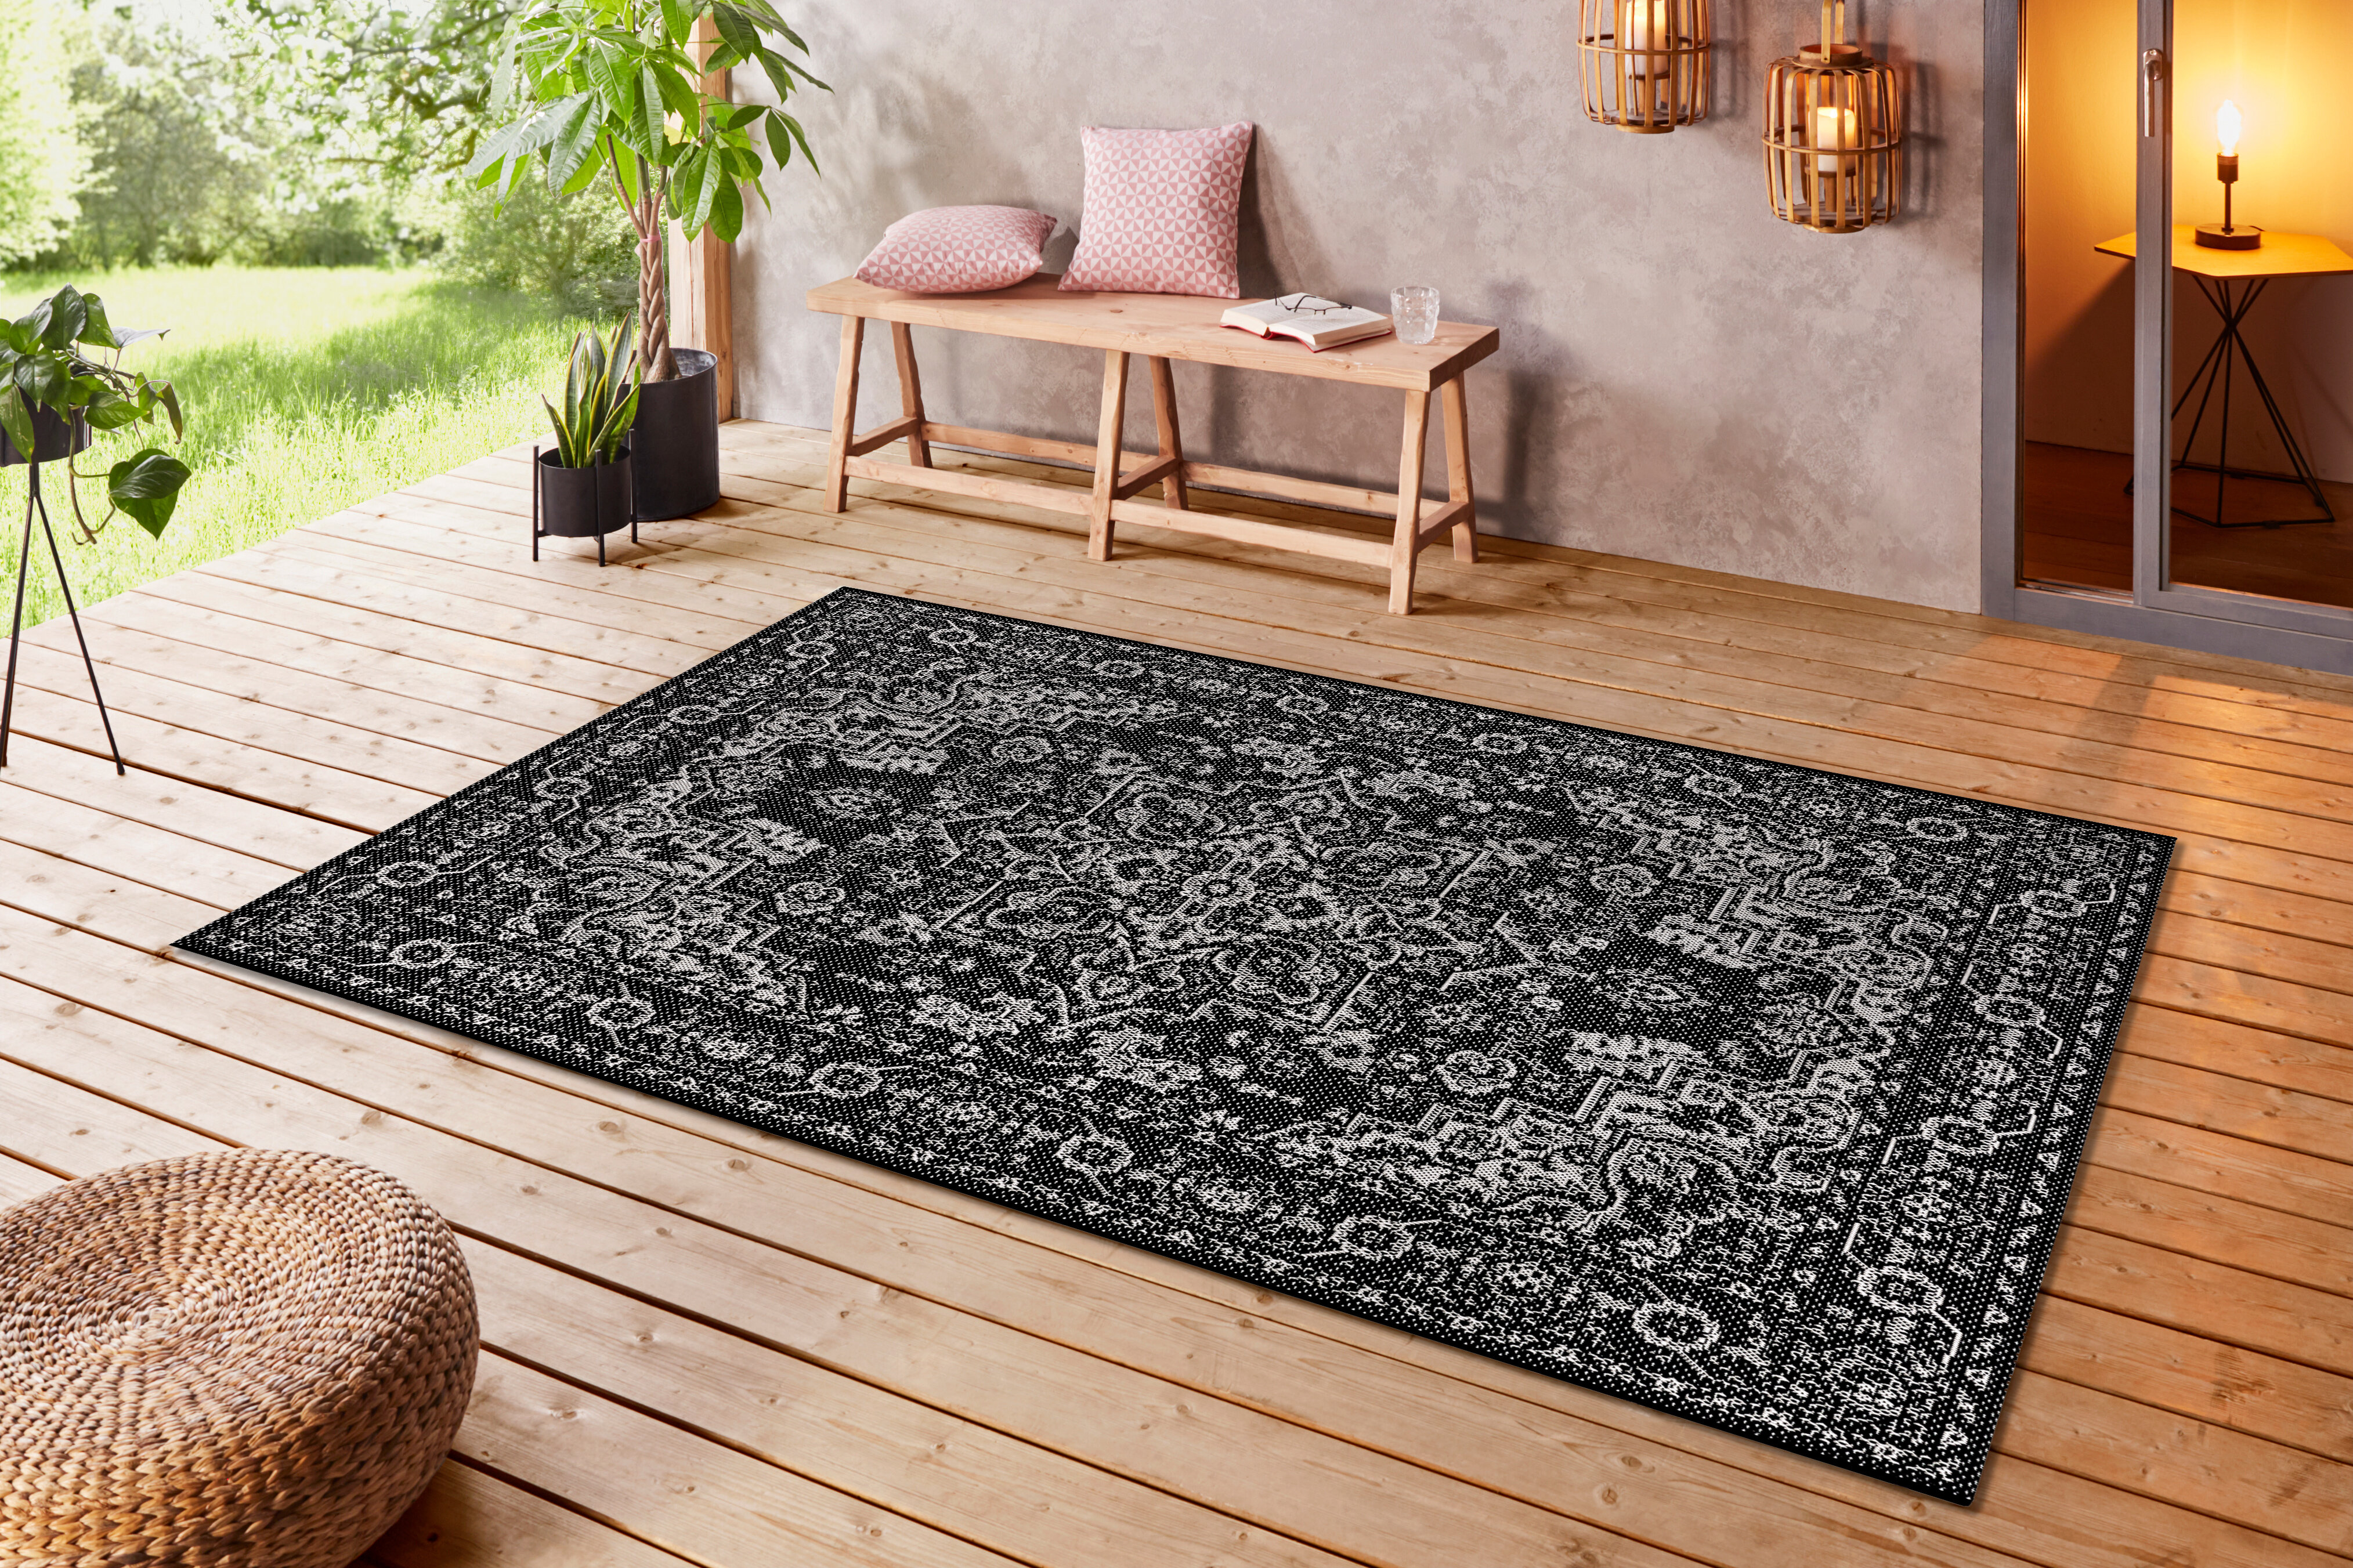  RUGMRZ Teppisch Teppiche, Dämm- & Schutzmatten Orientalteppich  schwarz Wohnzimmer Mittelteppich floral mit Schalldämmung Fußmatte Innen  Antirutsch Teppich 70 x 140 cm